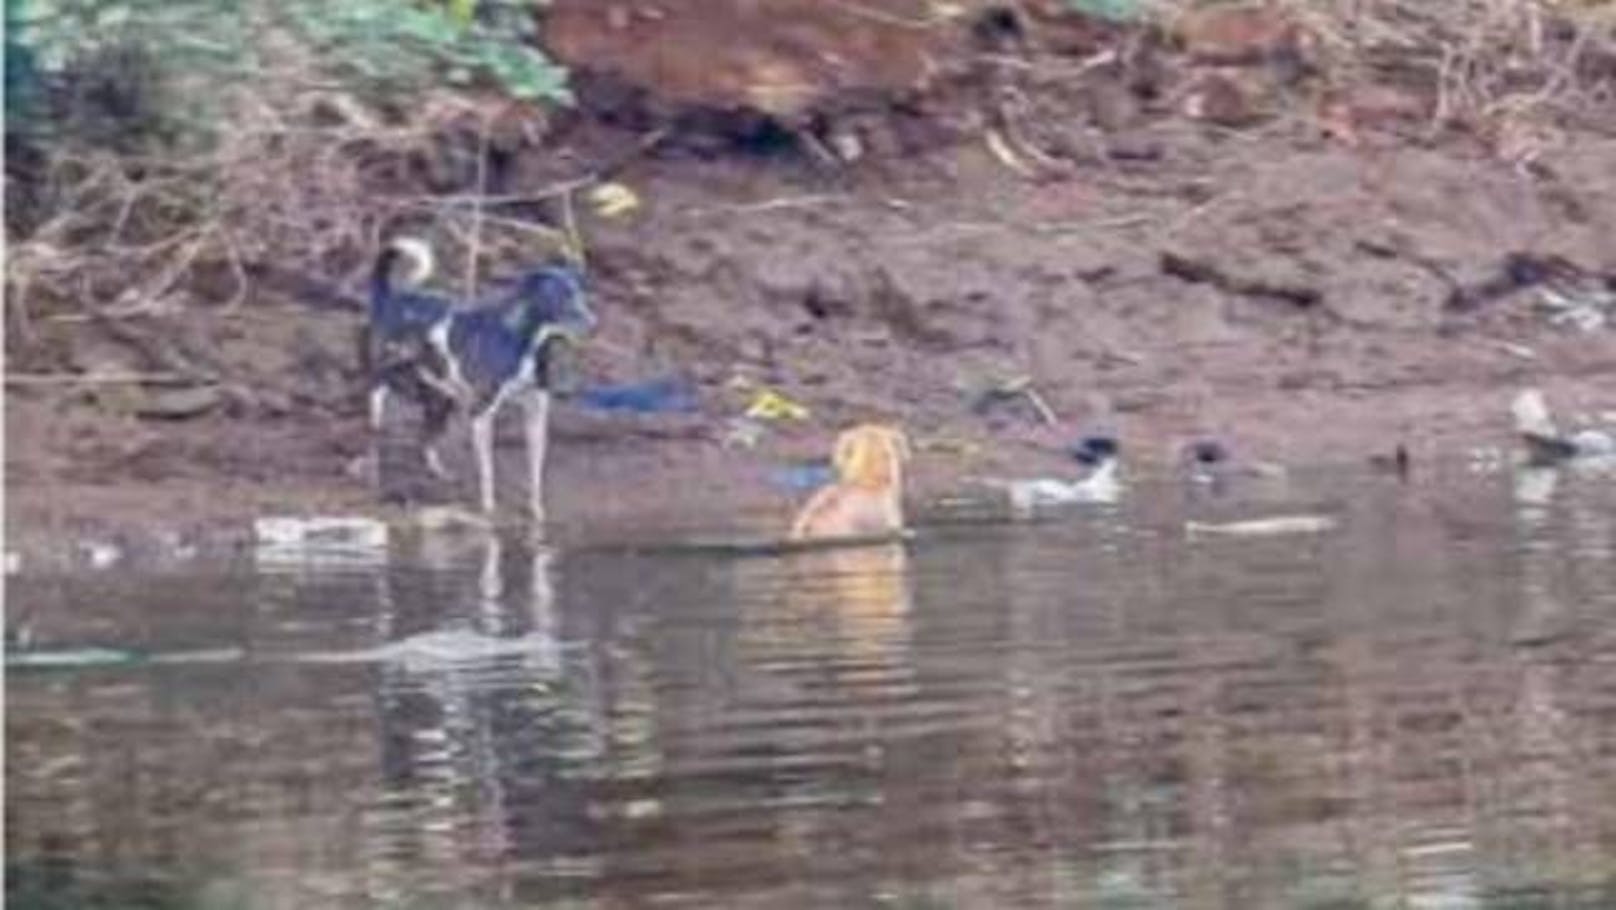 Der Hund war in Indien vor einem wilden Rudel in den Fluss geflüchtet. "Zu diesem Zeitpunkt schwammen drei ausgewachsene Räuber in ihrer Nähe, so die Forscher, die jahrelang <a data-li-document-ref="100263105" href="https://www.heute.at/s/tiere-wildtiere-dieser-einfache-trick-rettet-dich-vor-einem-krokodil-100263105">Sumpfkrokodile</a> in Maharashtera, Indien, untersucht haben.